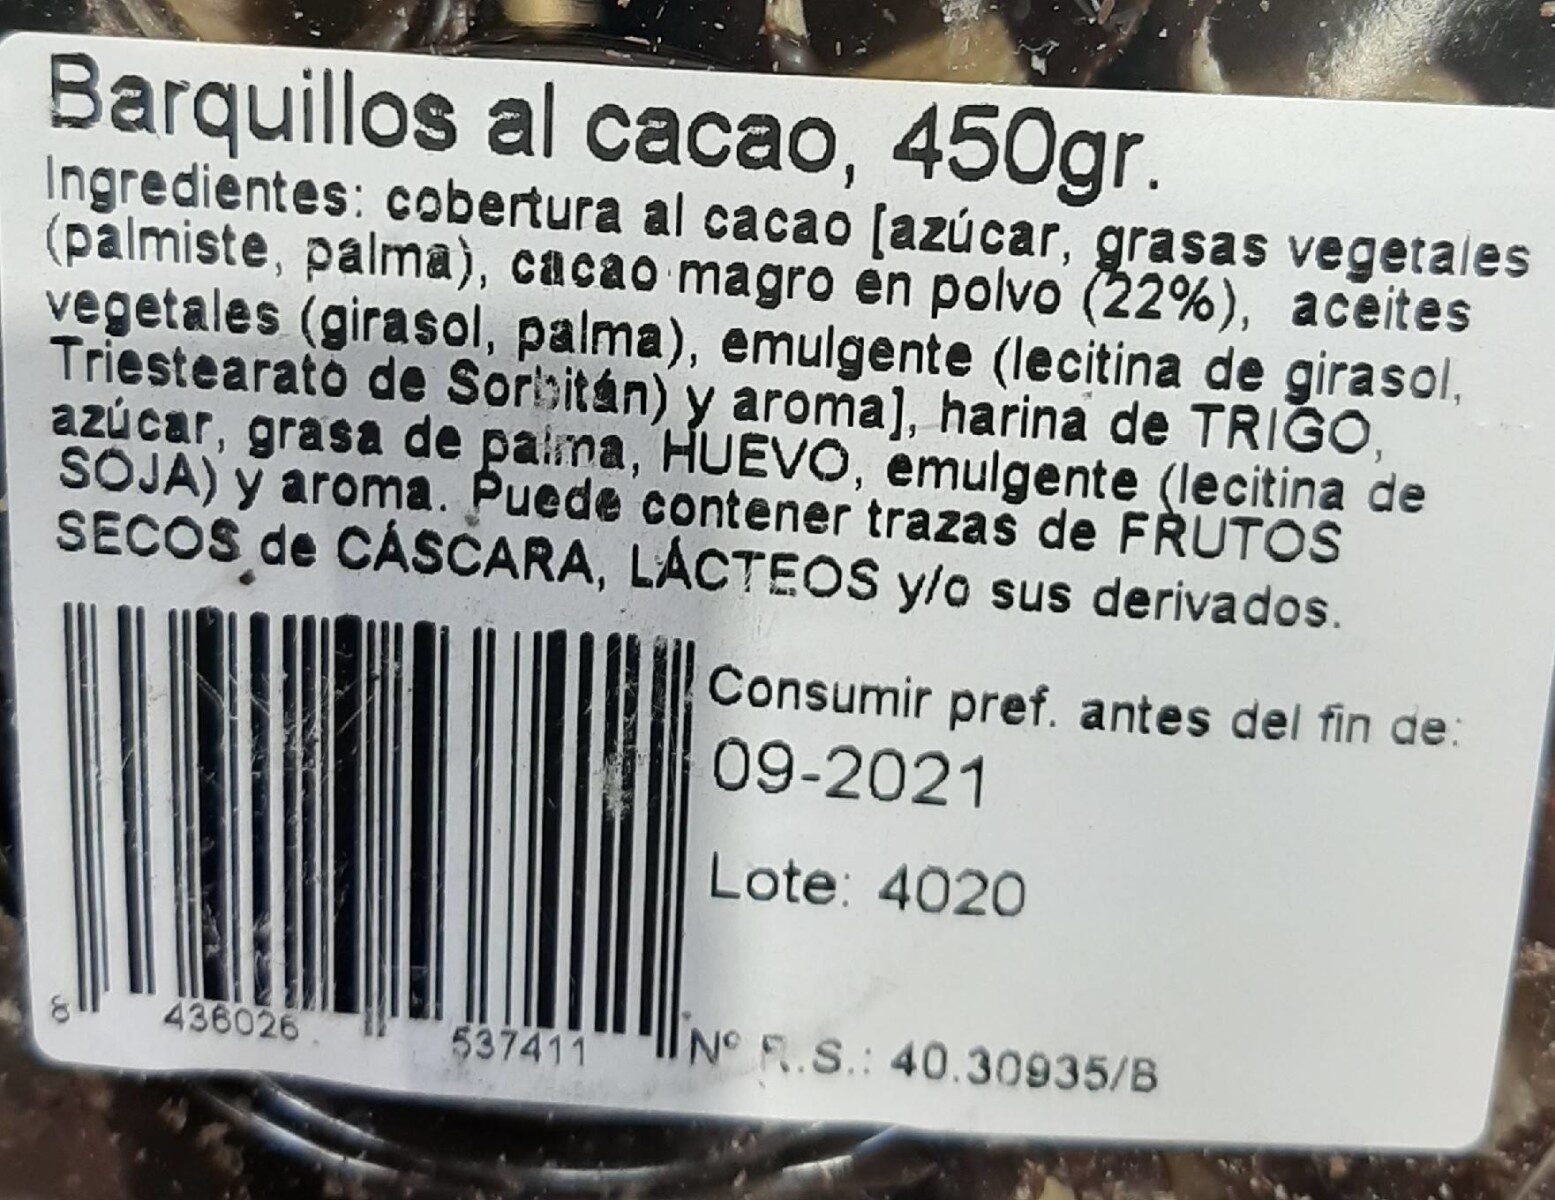 Barquillos al cacao - Nutrition facts - es